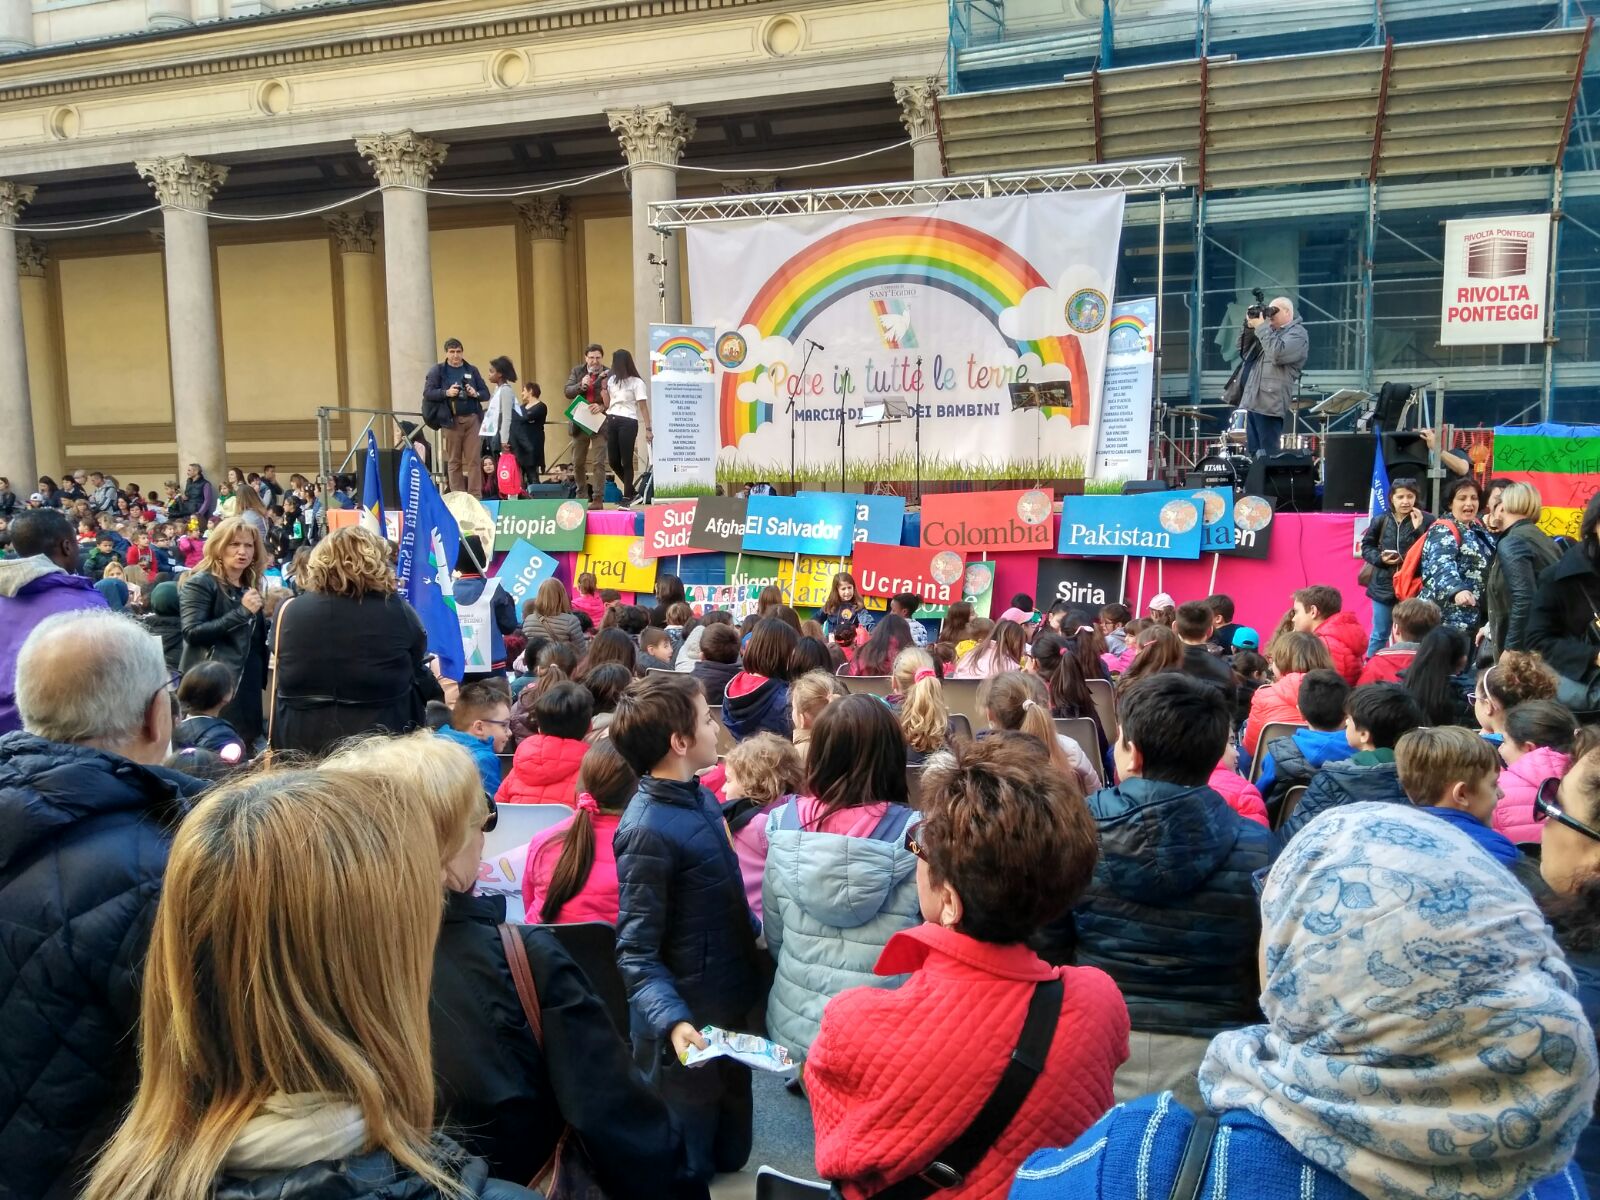 A Novara, II messaggio di 2 mila bambini: "La pace si coltiva ogni giorno"